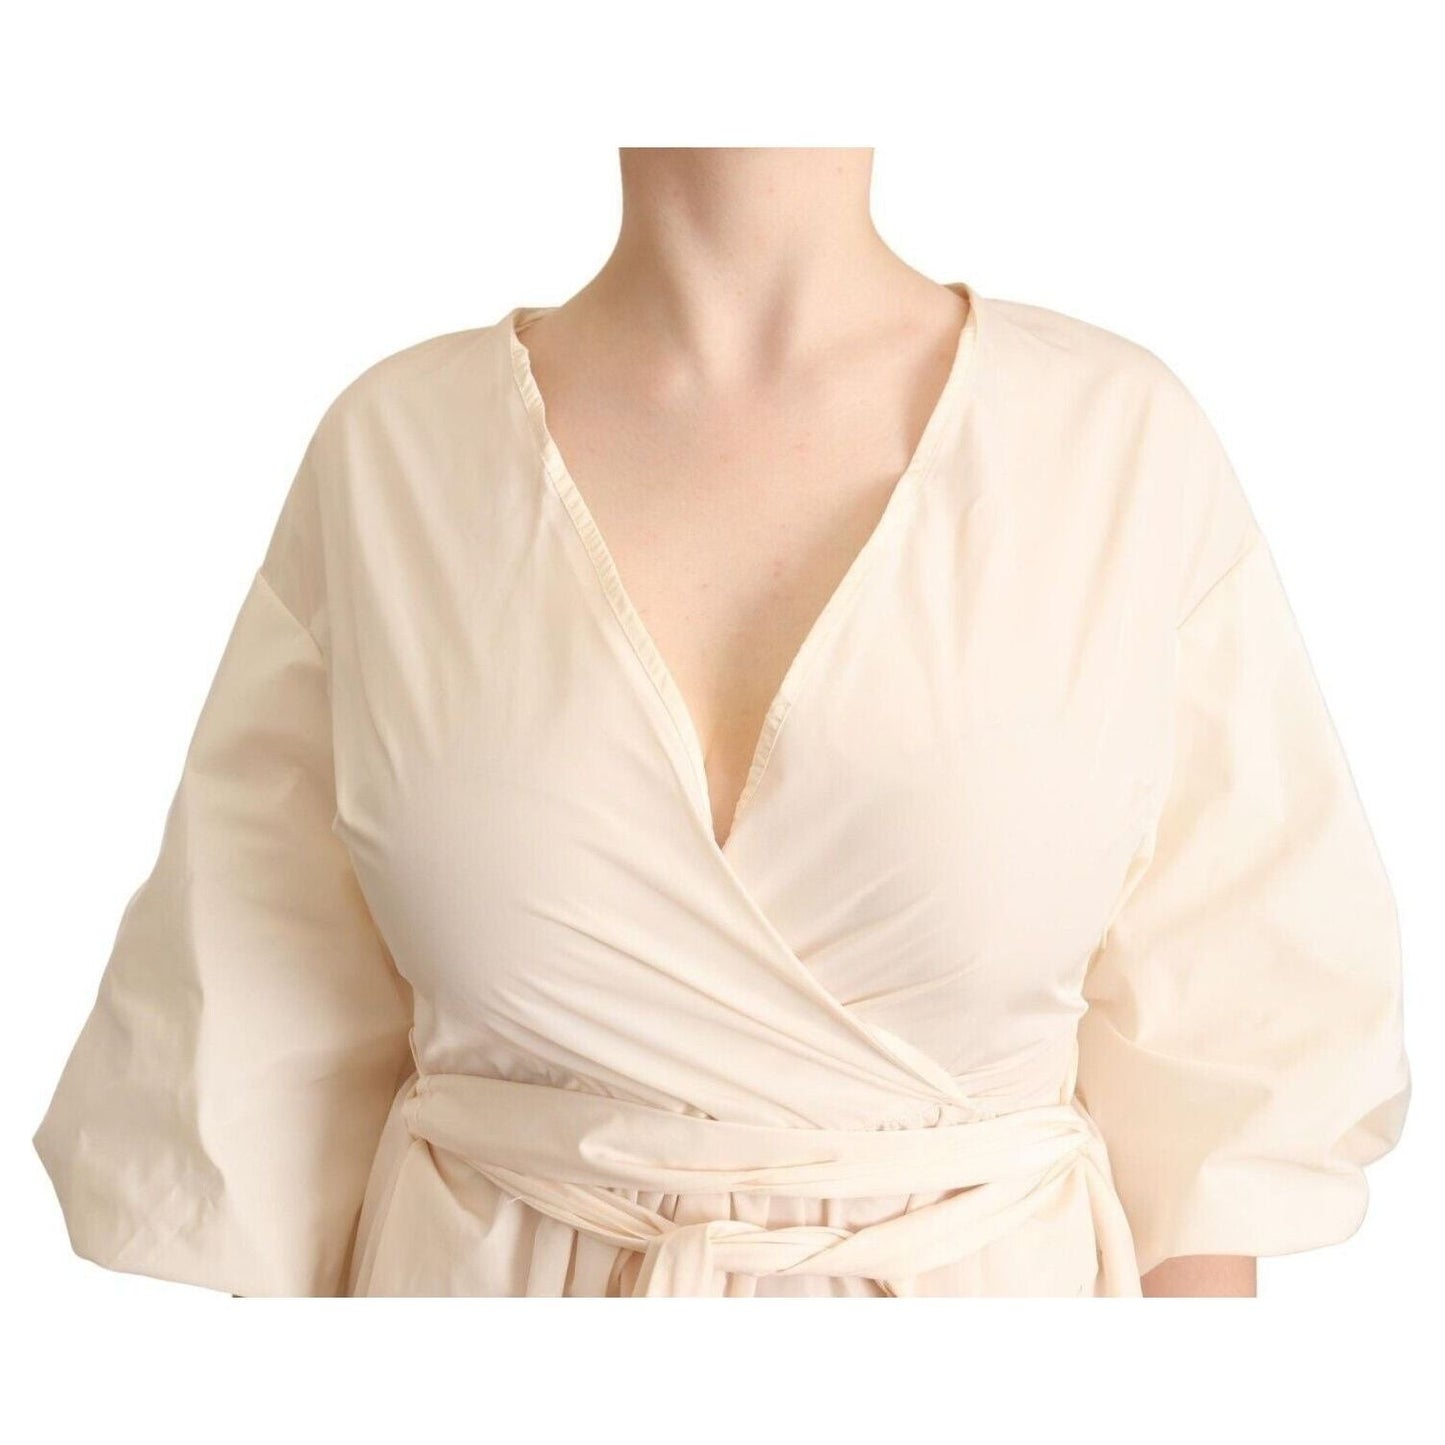 PINK MEMORIES Elegant Off White Maxi Wrap Dress off-white-short-sleeves-maxi-a-line-wrap-dress